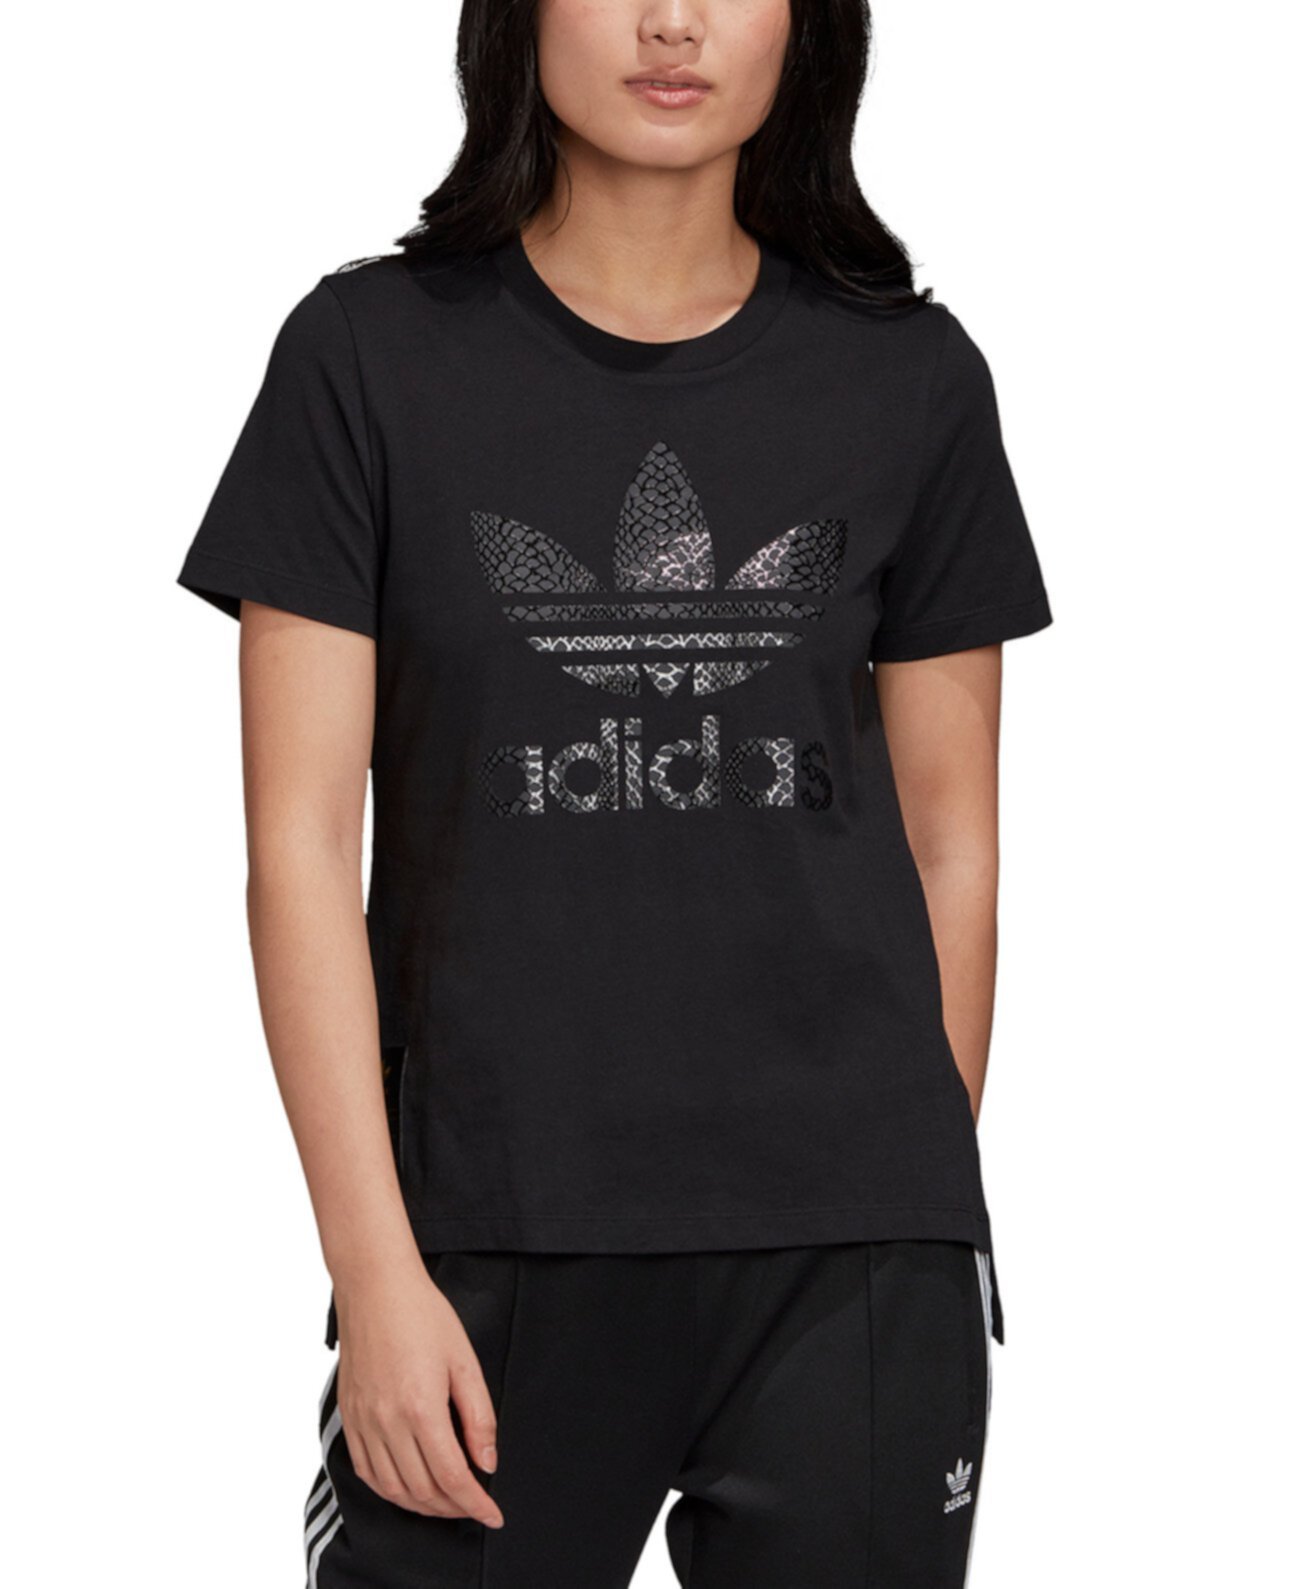 Женская хлопковая футболка с принтом и логотипом Adidas